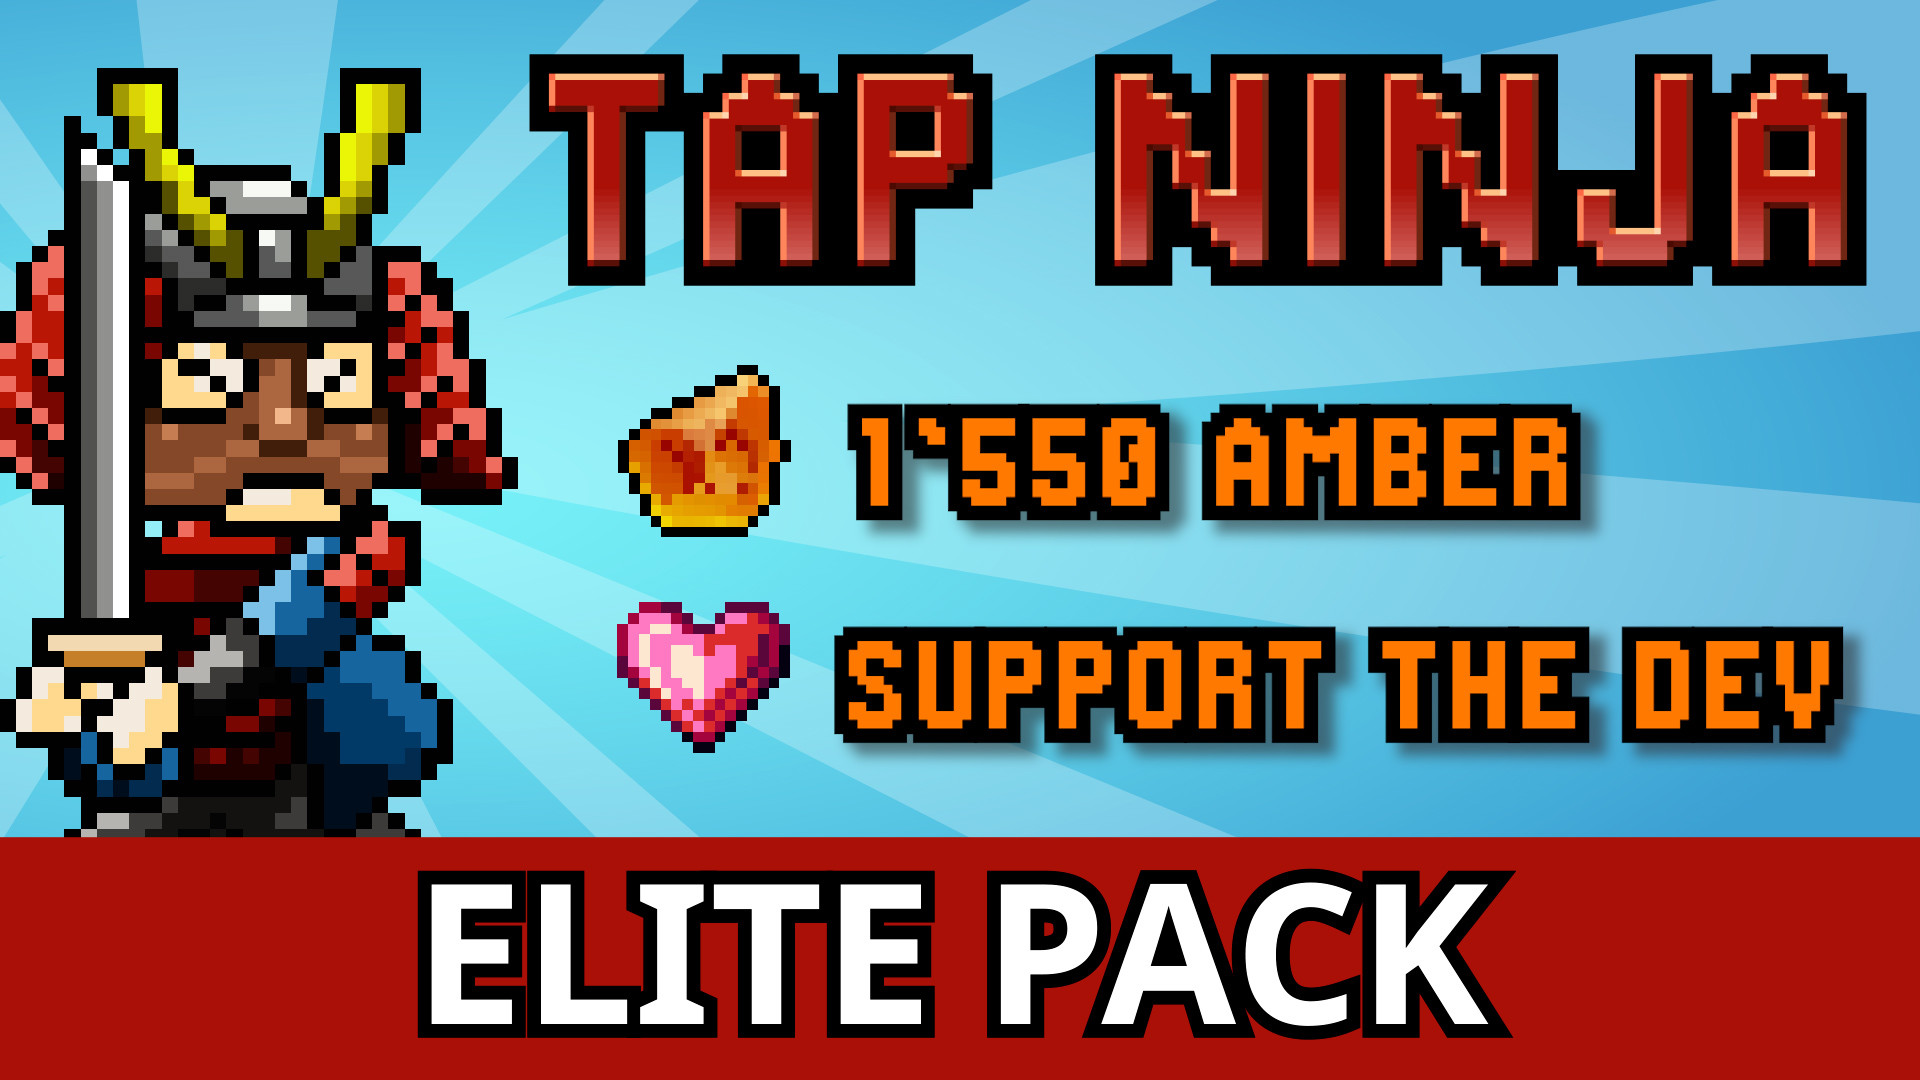 Tap Ninja - Supporter Pack DLC Steam CD Key 4.51 $